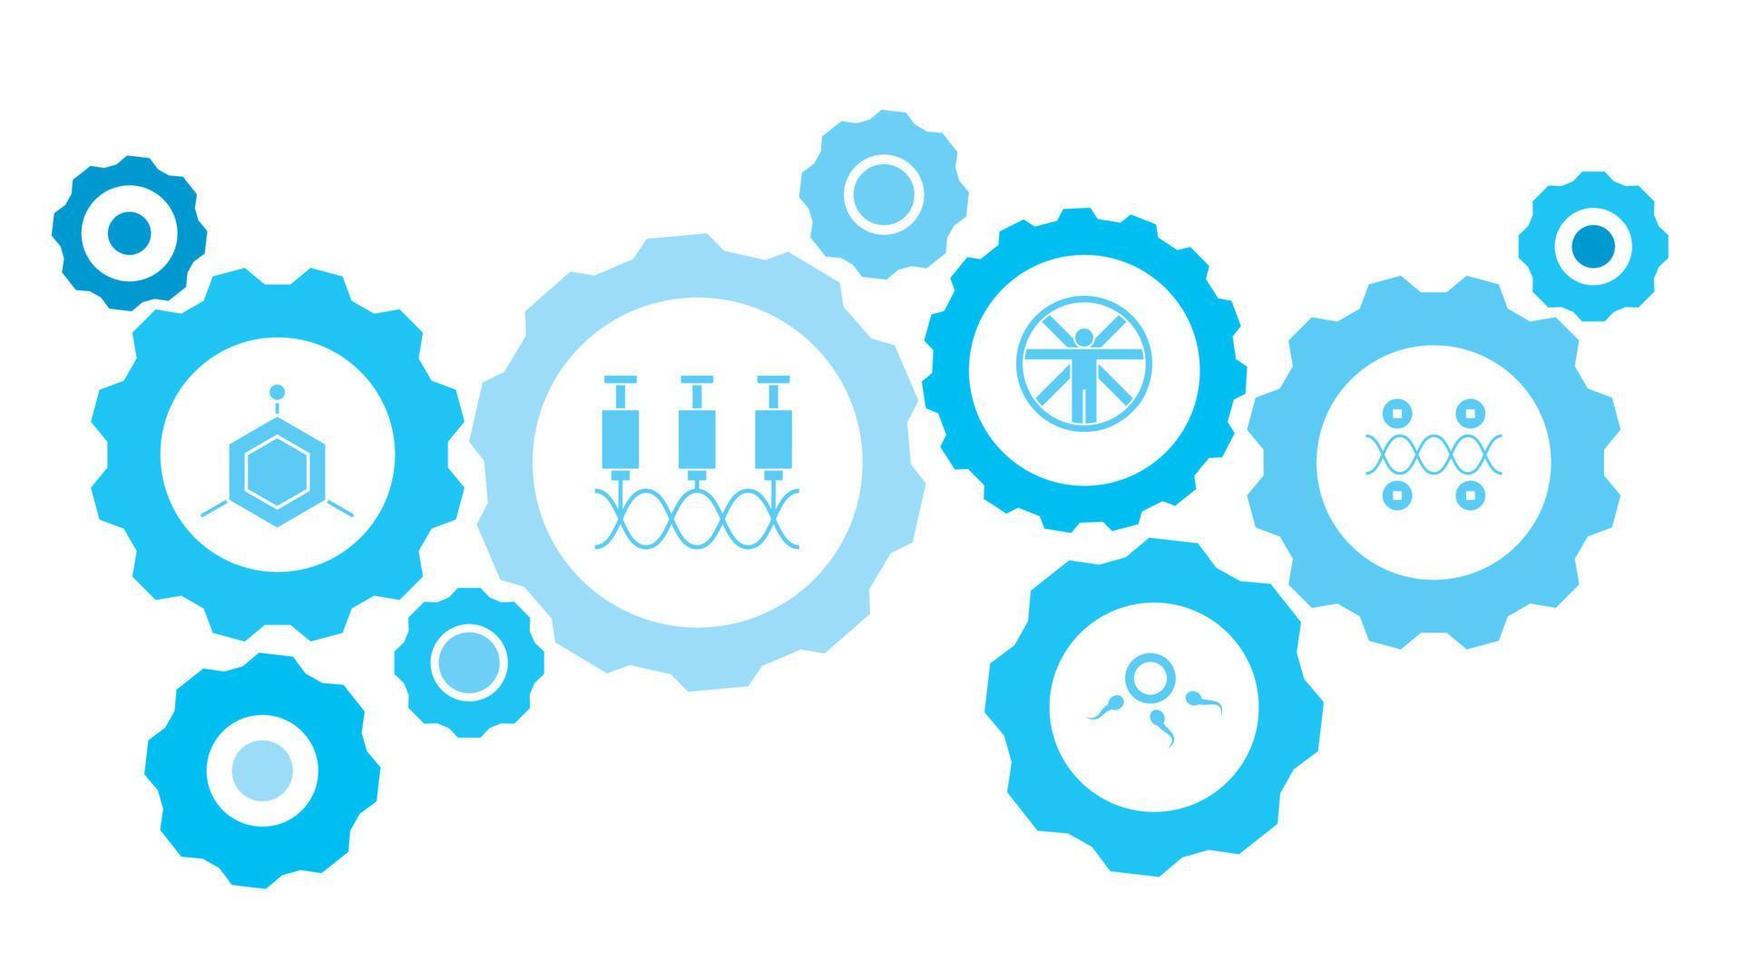 Gene, blaues Icon-Set für Genetikausrüstung. verbundene Zahnräder und Vektorsymbole für Logistik, Service, Versand, Vertrieb, Transport, Markt, Kommunikationskonzepte. auf weißem Hintergrund vektor